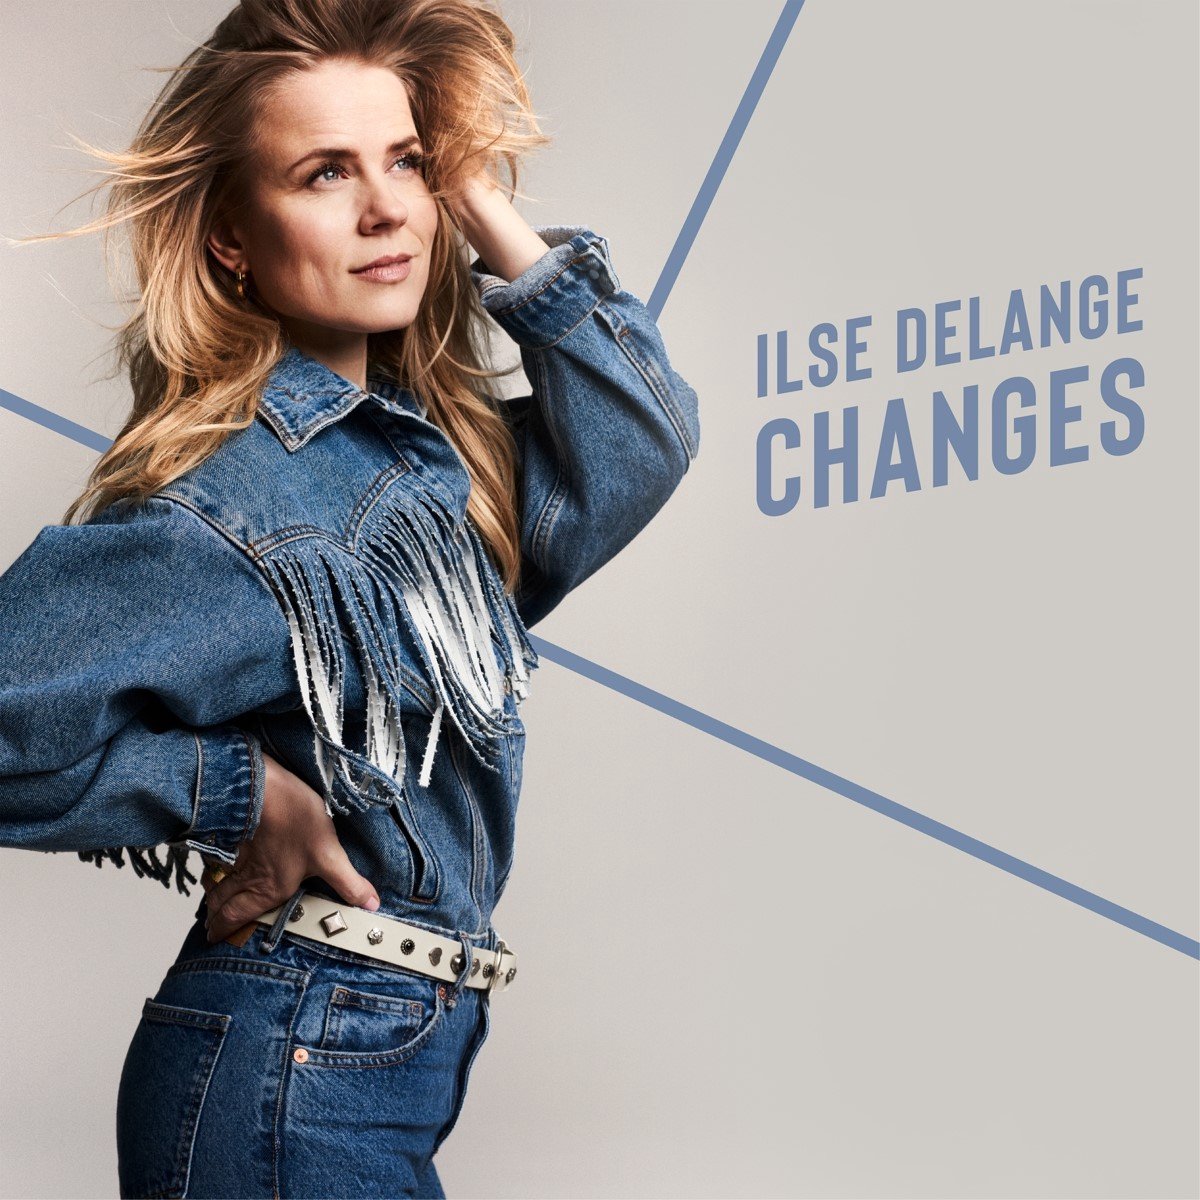 Ilse Delange - Changes (CD) - Ilse DeLange